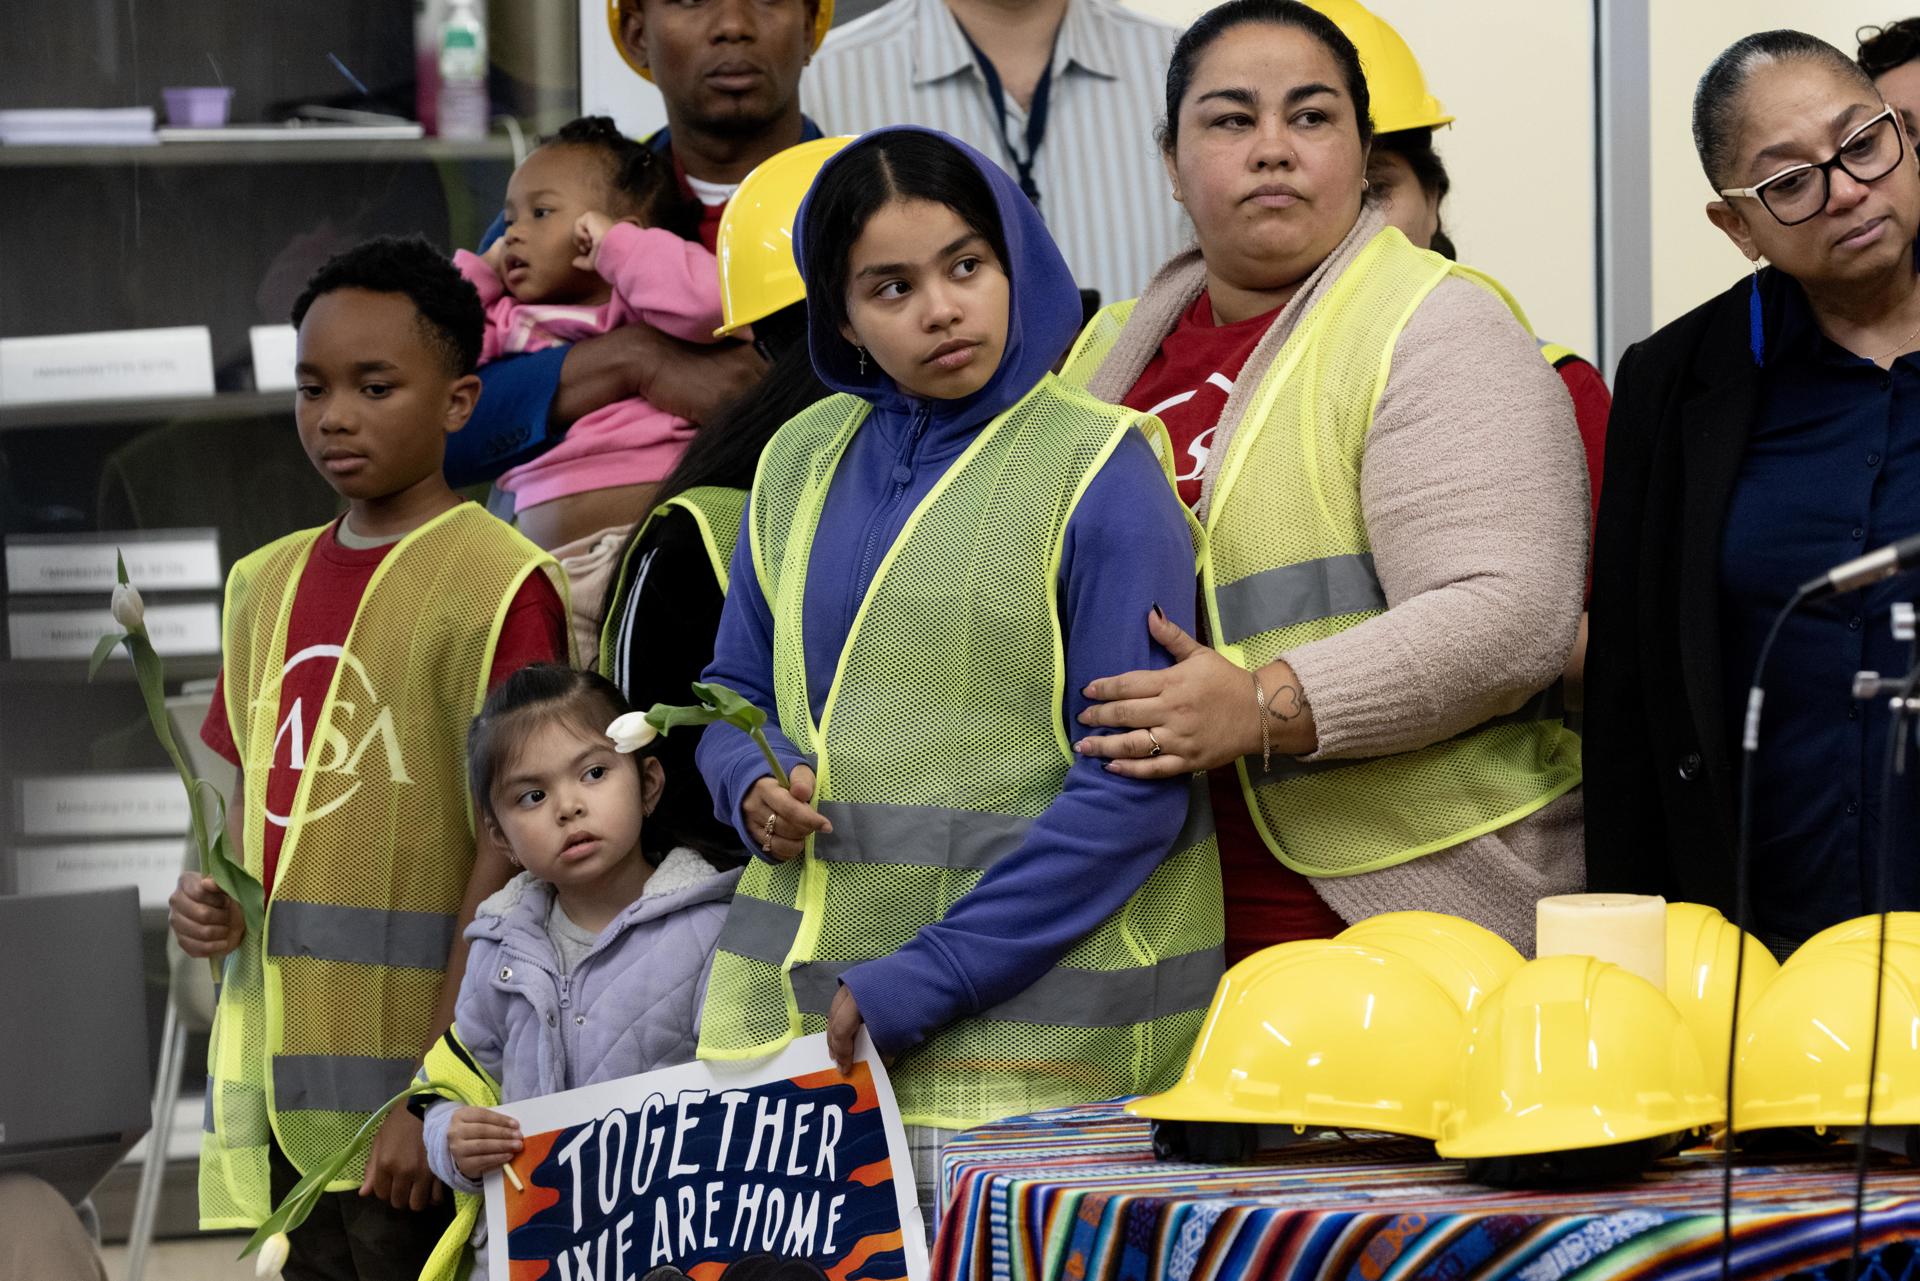 "El riesgo es el diario vivir", dice obrero latino en Estados Unidos tras accidente en Baltimore